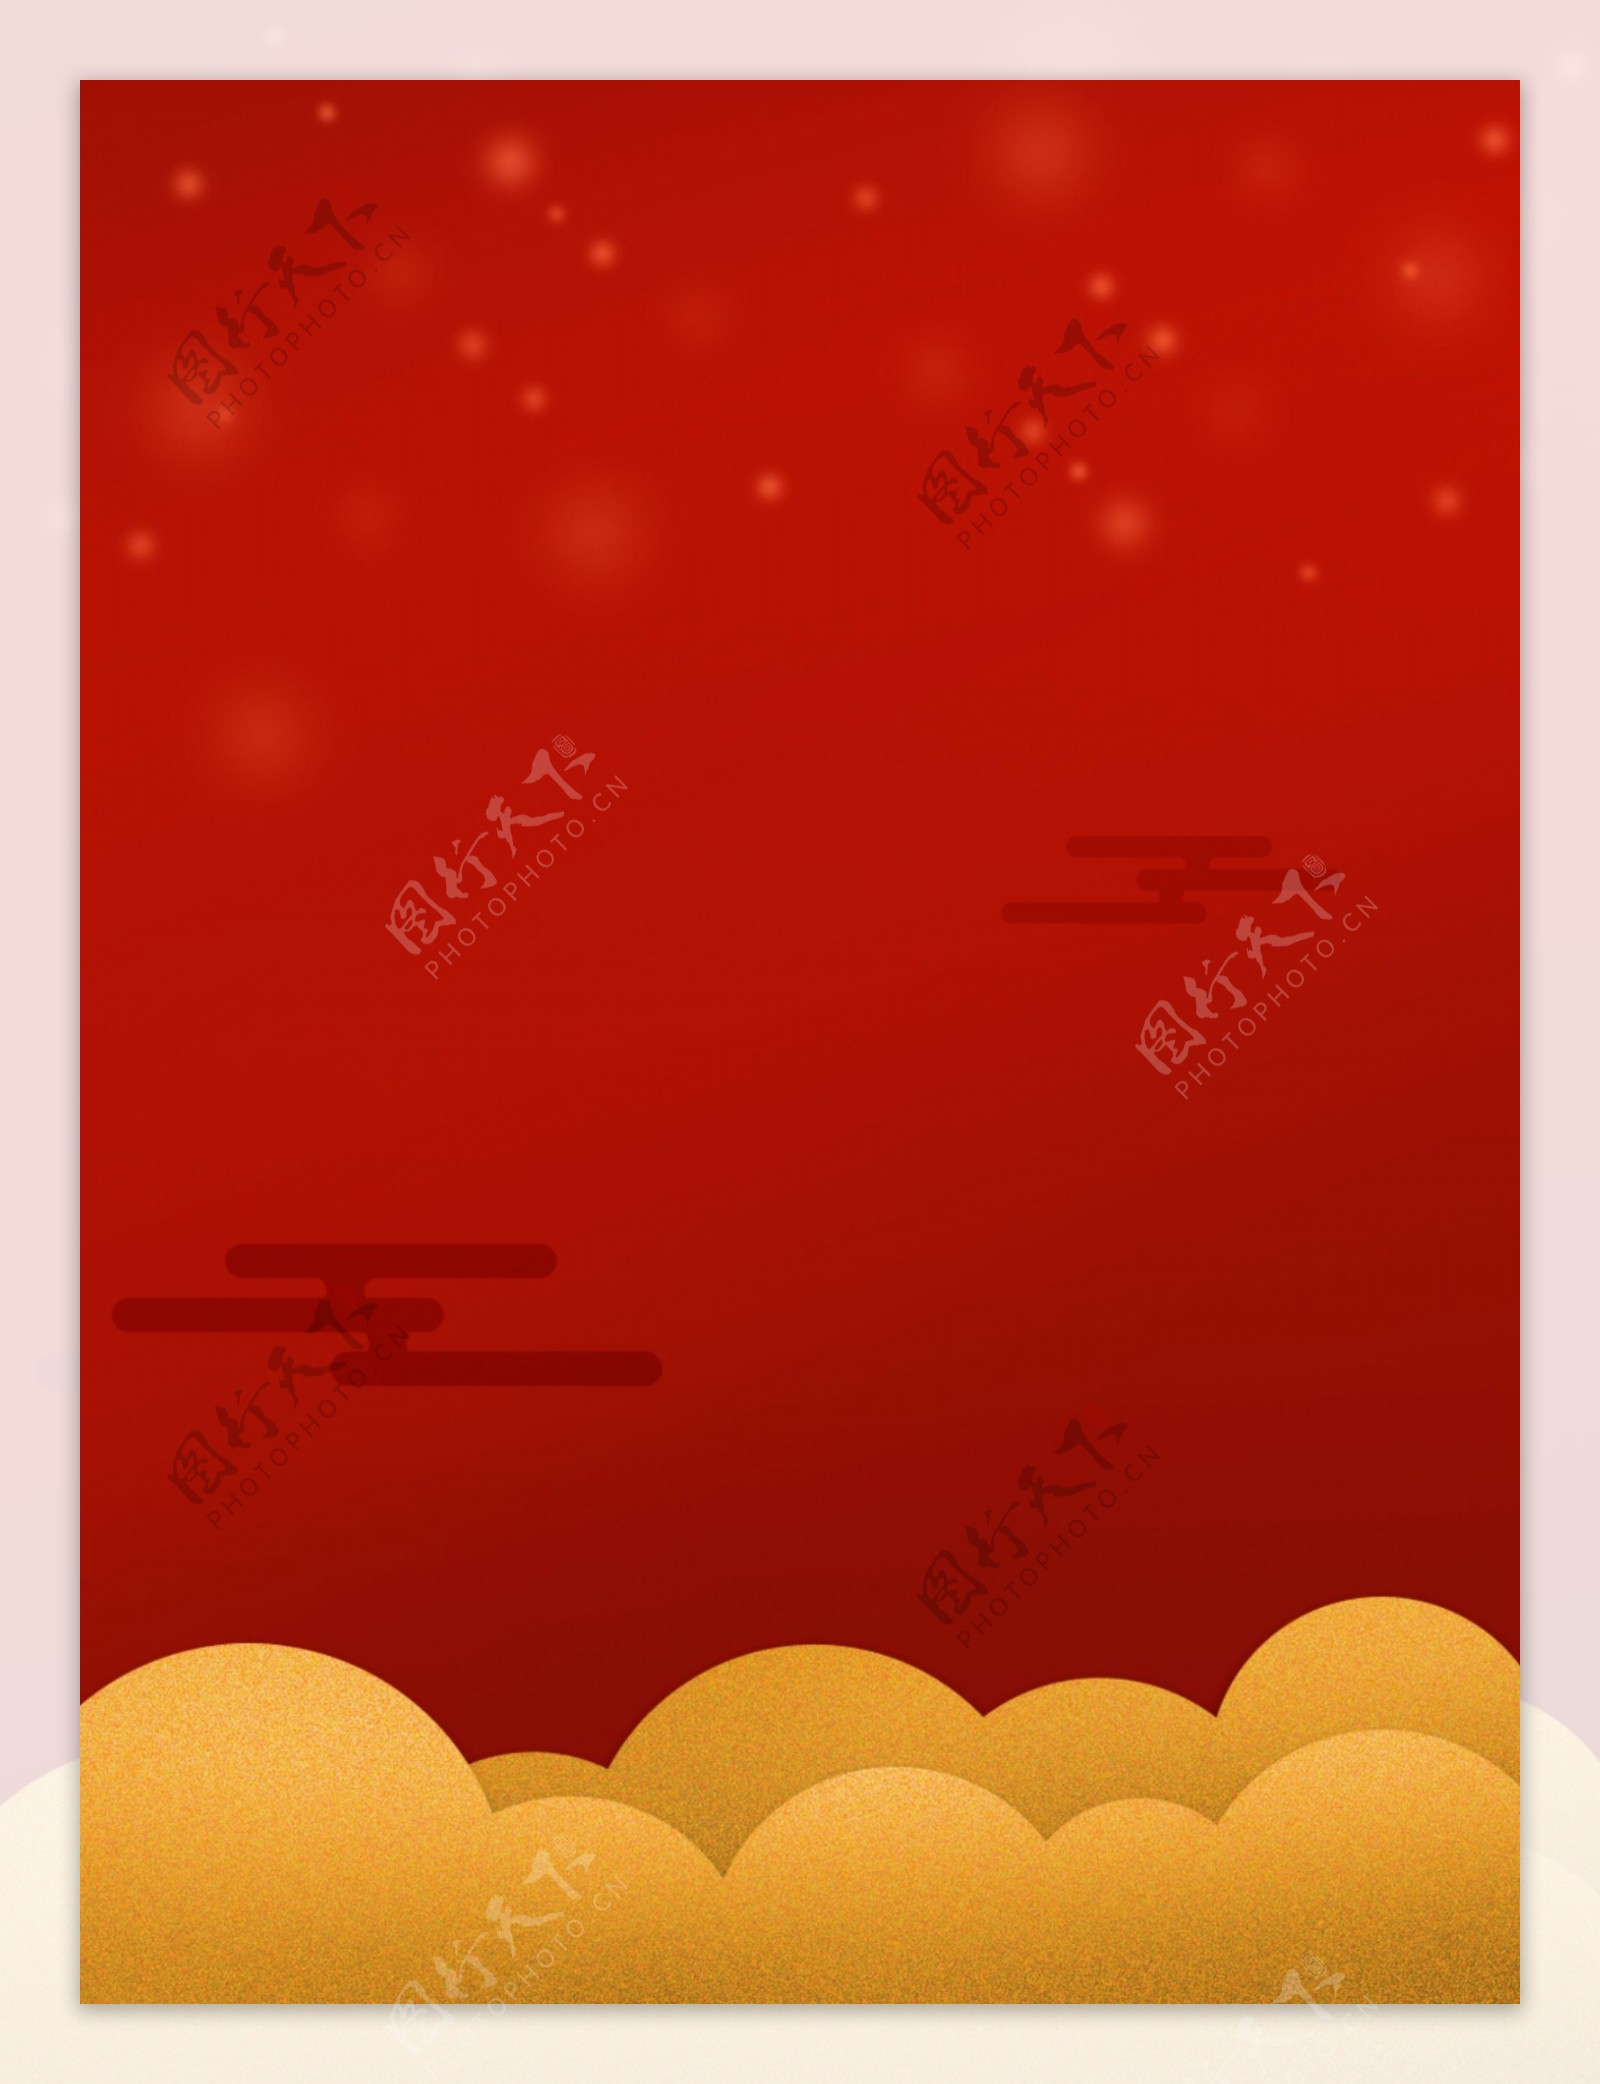 红色简约新年快乐宣传背景素材